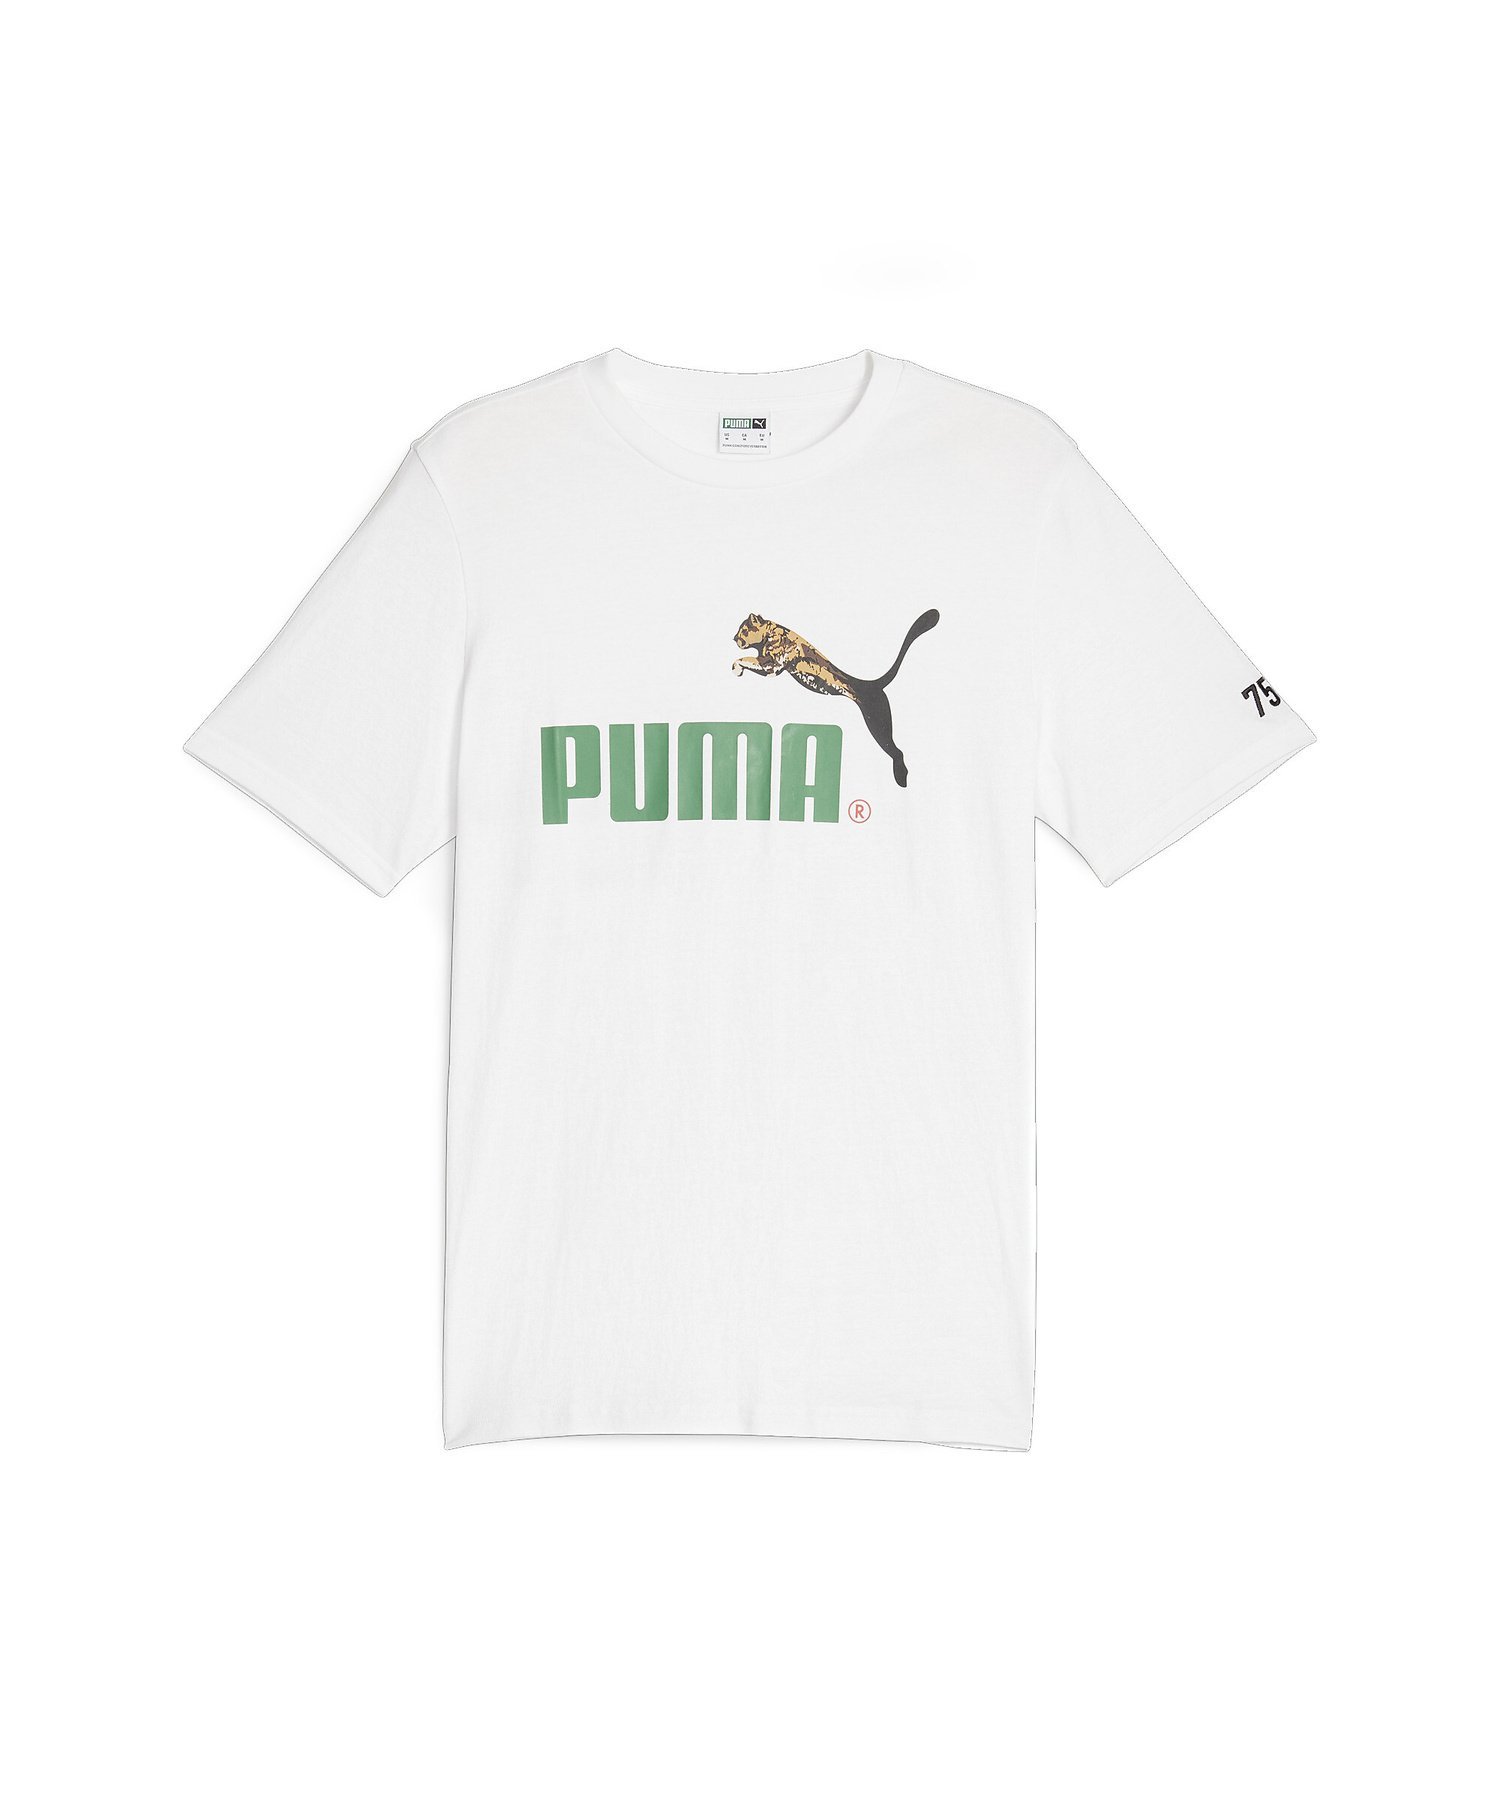 PUMA ユニセックス CLASSICS NO.1 ロゴ セレブレーション Tシャツ プーマ トップス カットソー・Tシャツ